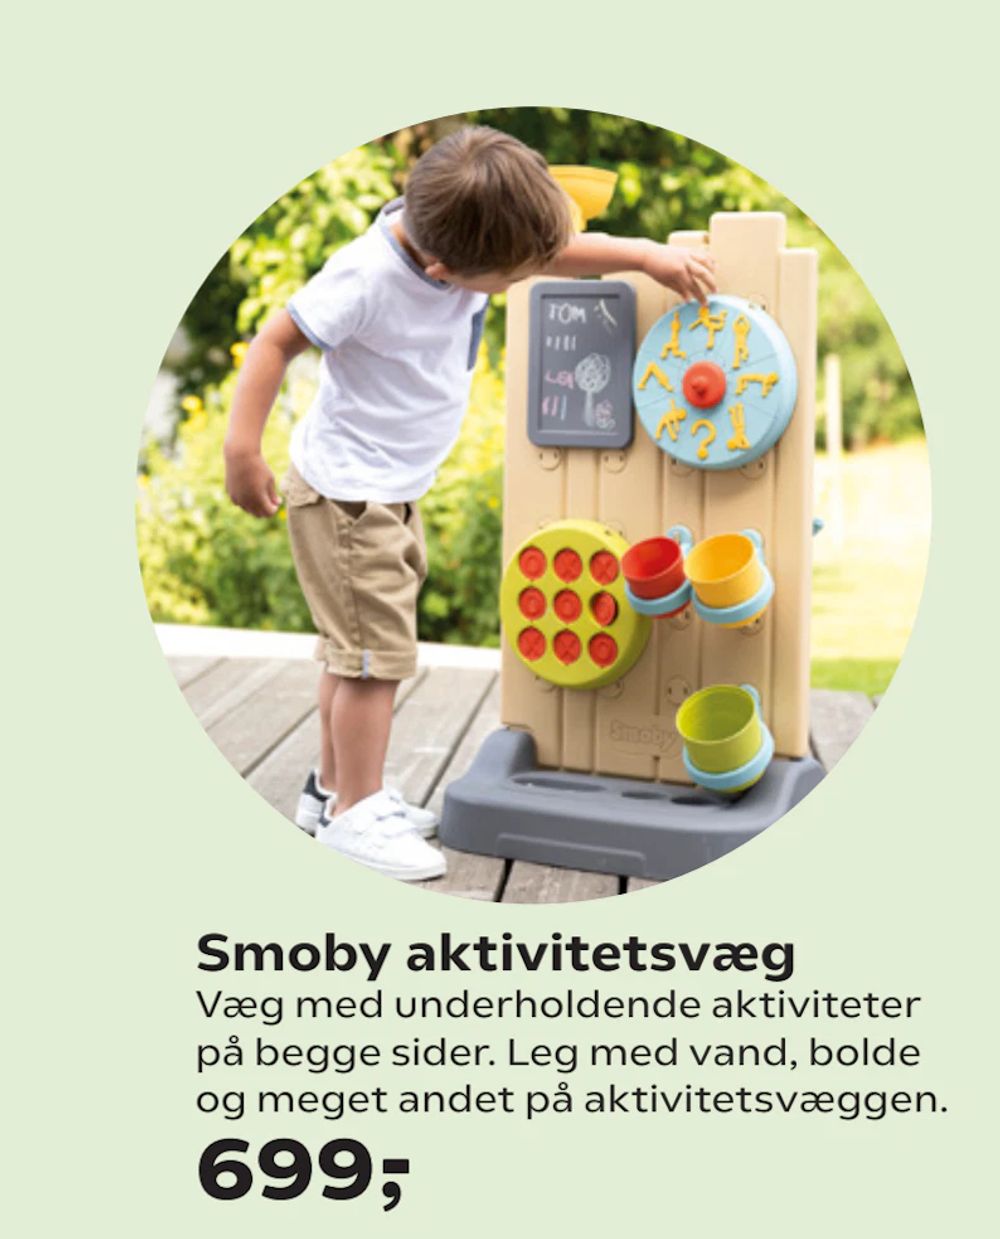 Tilbud på Smoby aktivitetsvæg fra Coop.dk til 699 kr.